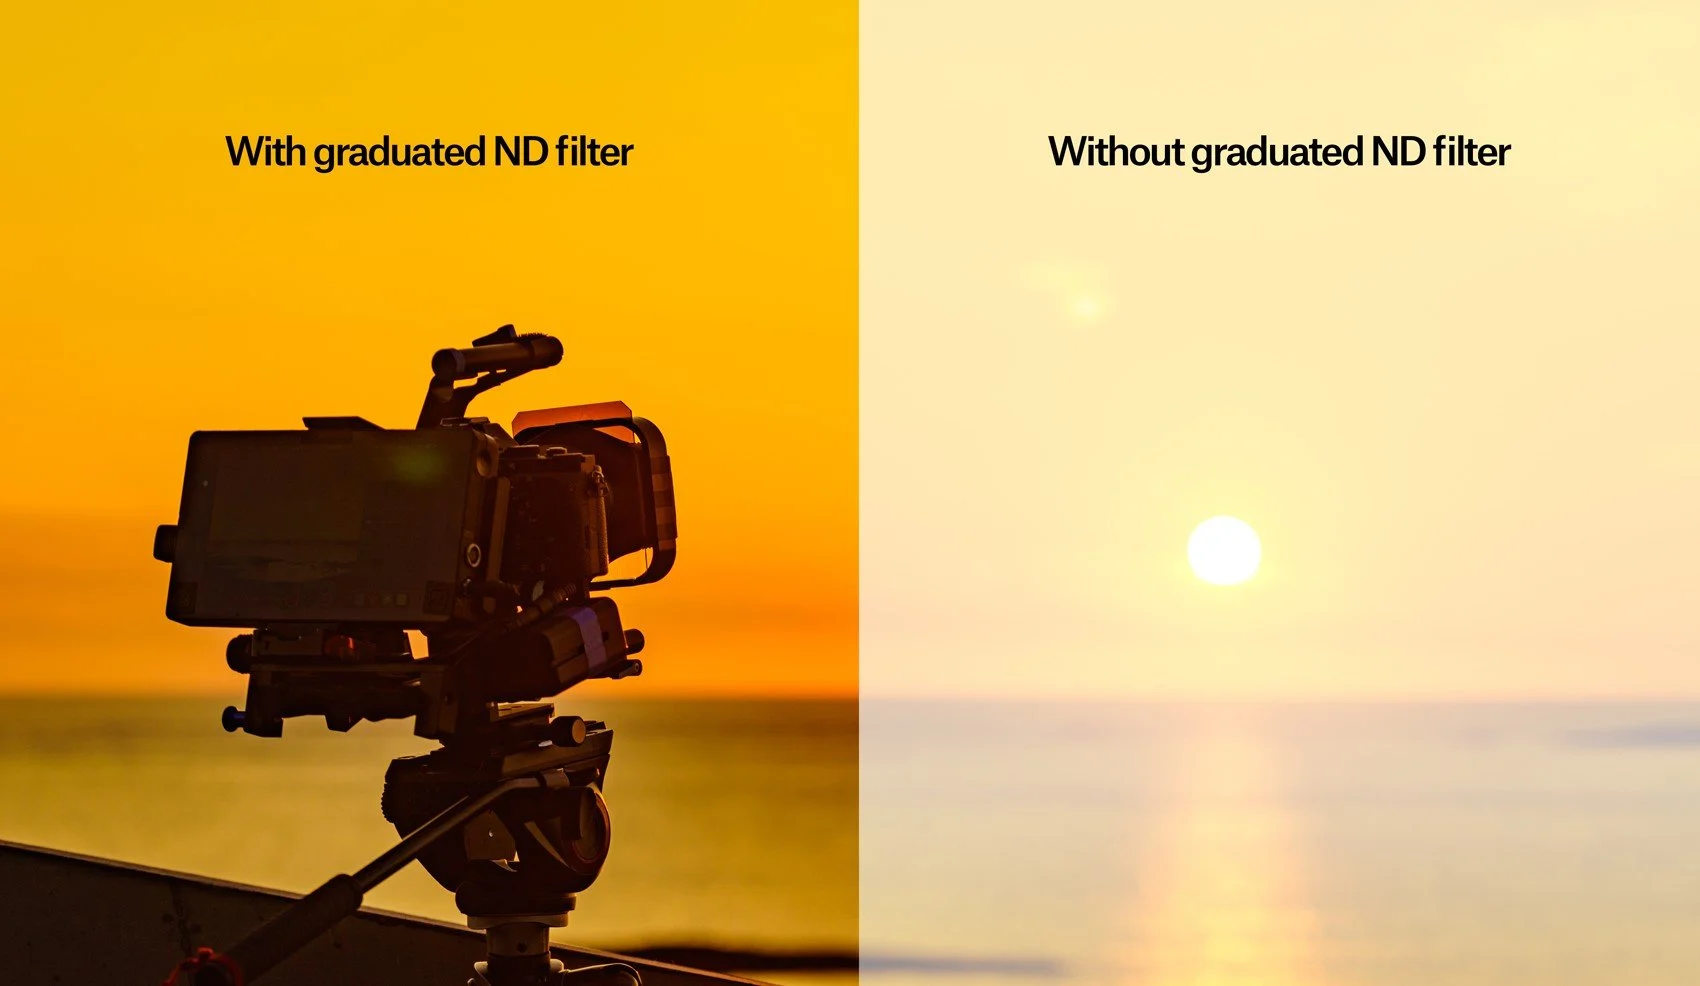 Et billede, der viser forskellen mellem at bruge et gradueret ND-filter, og hvornår det ikke bruges. Hvis du bruger det, får du en bedre rekonstruktion af lyset.